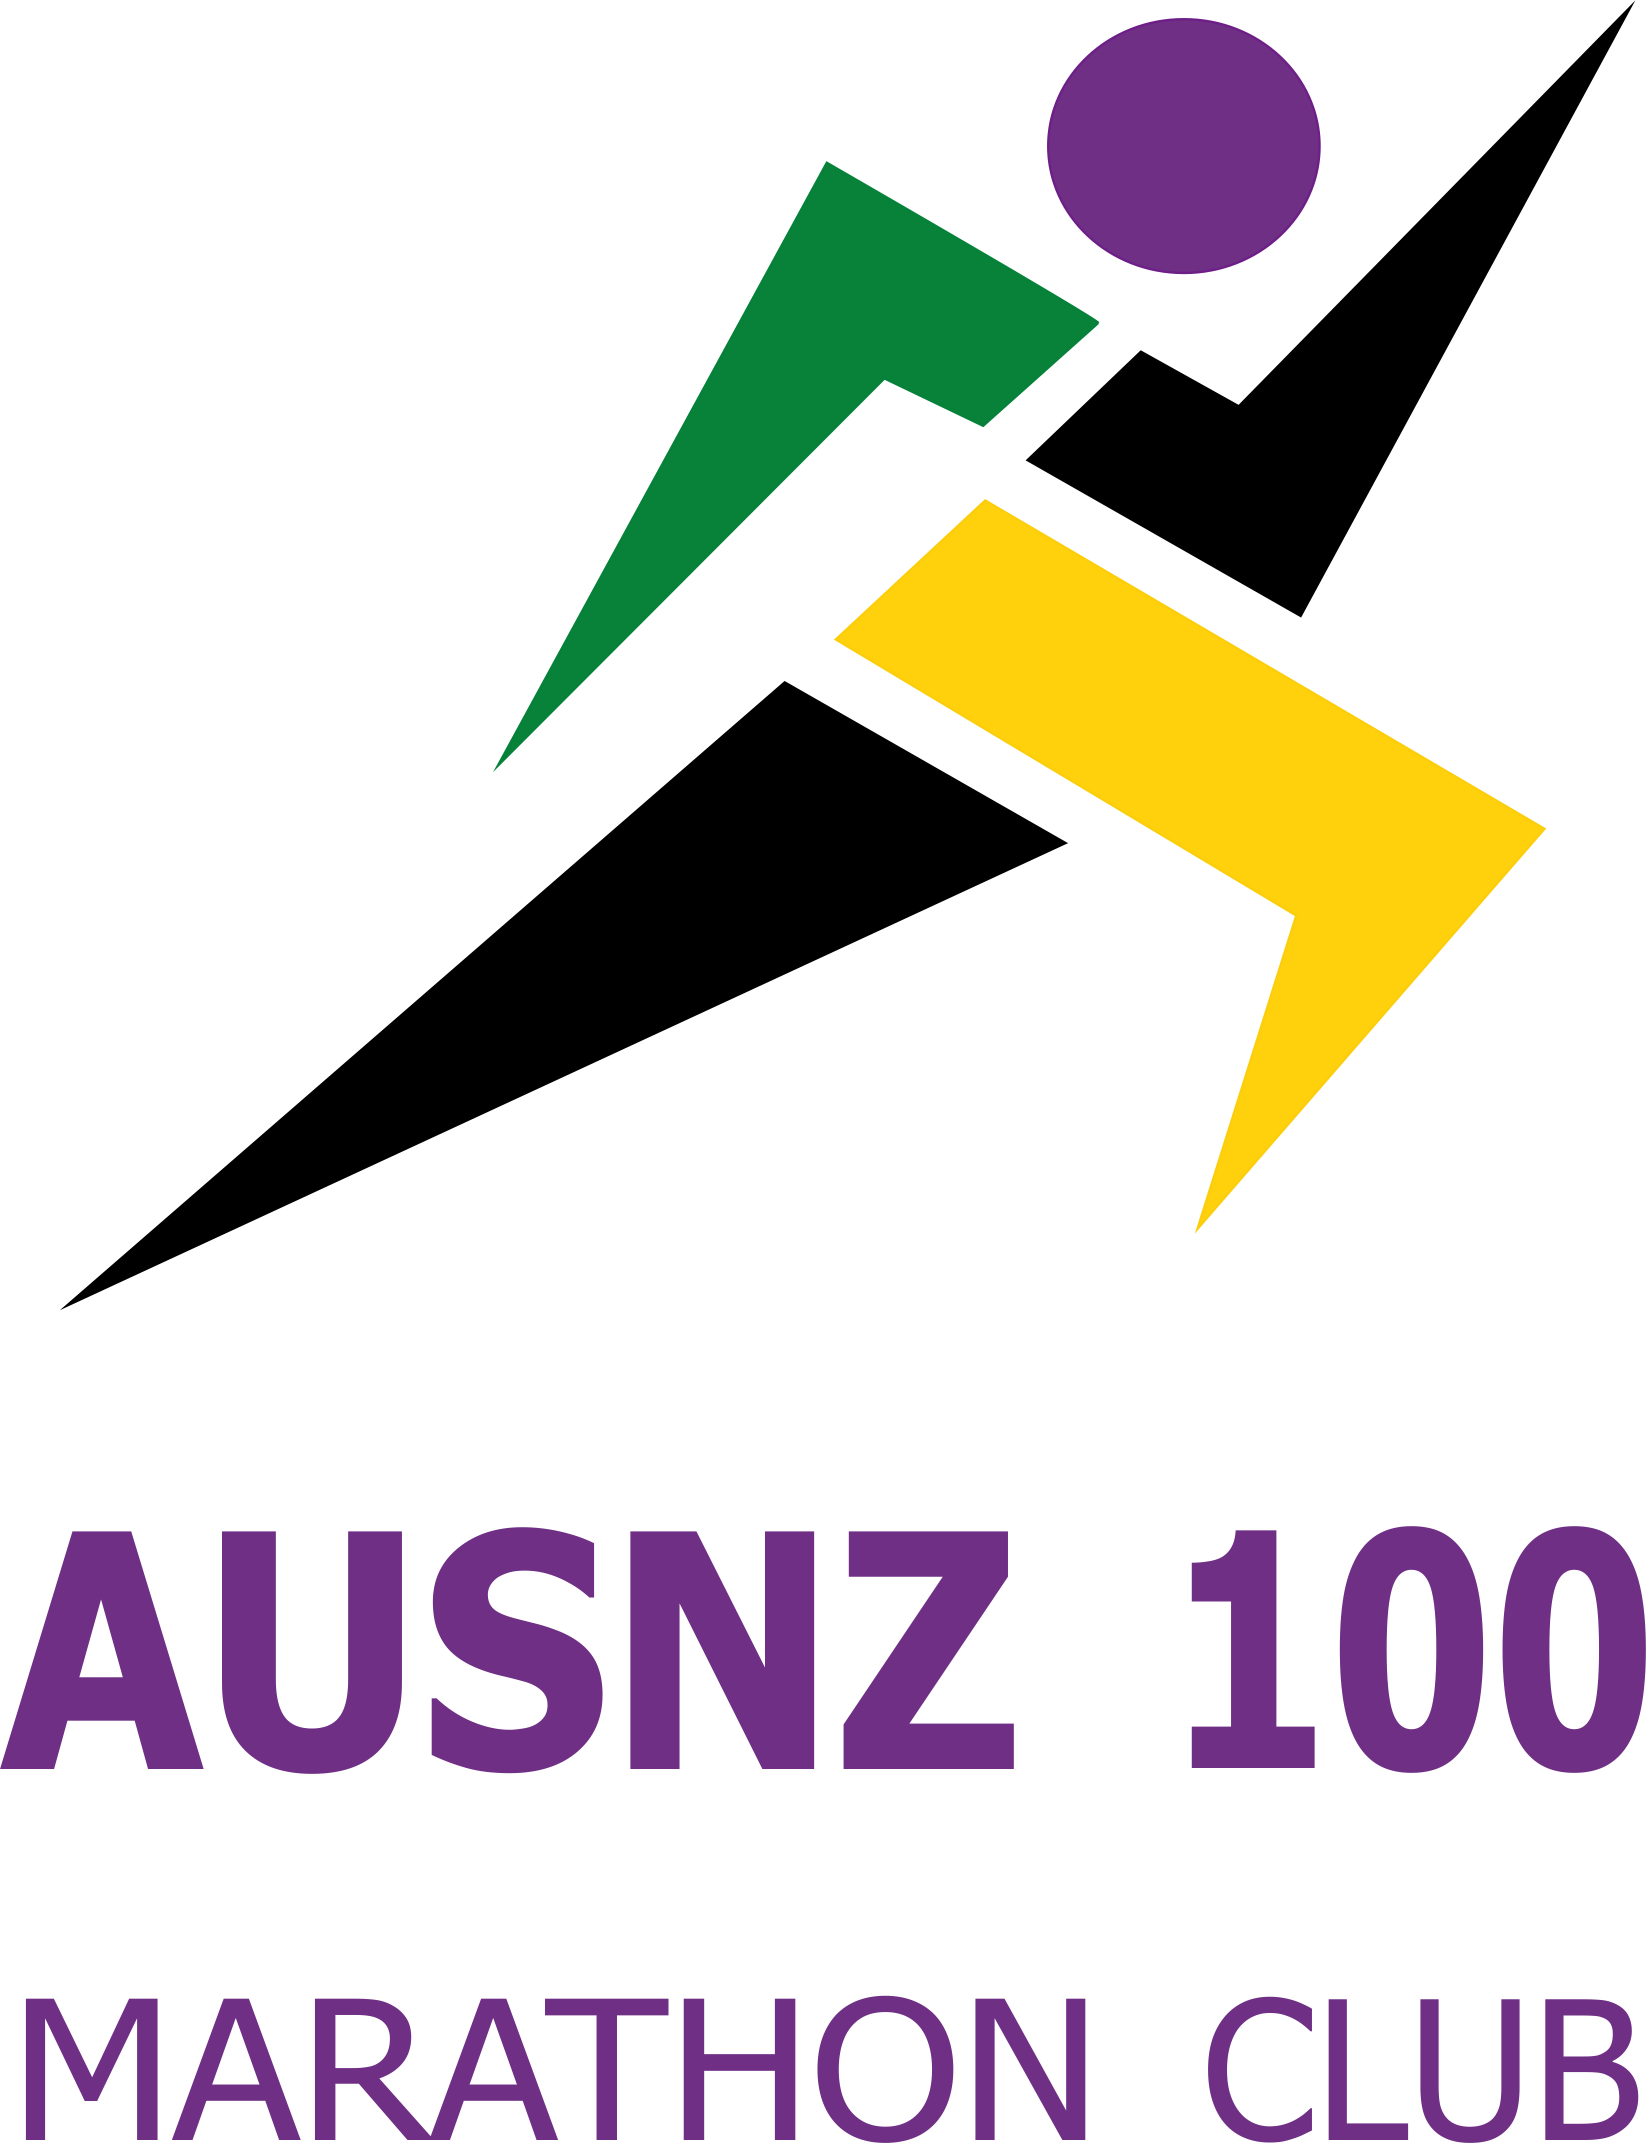 BRAVERUNNERS AUSNZ 100 Marathon Club – for ALL runners of the marathon  distance